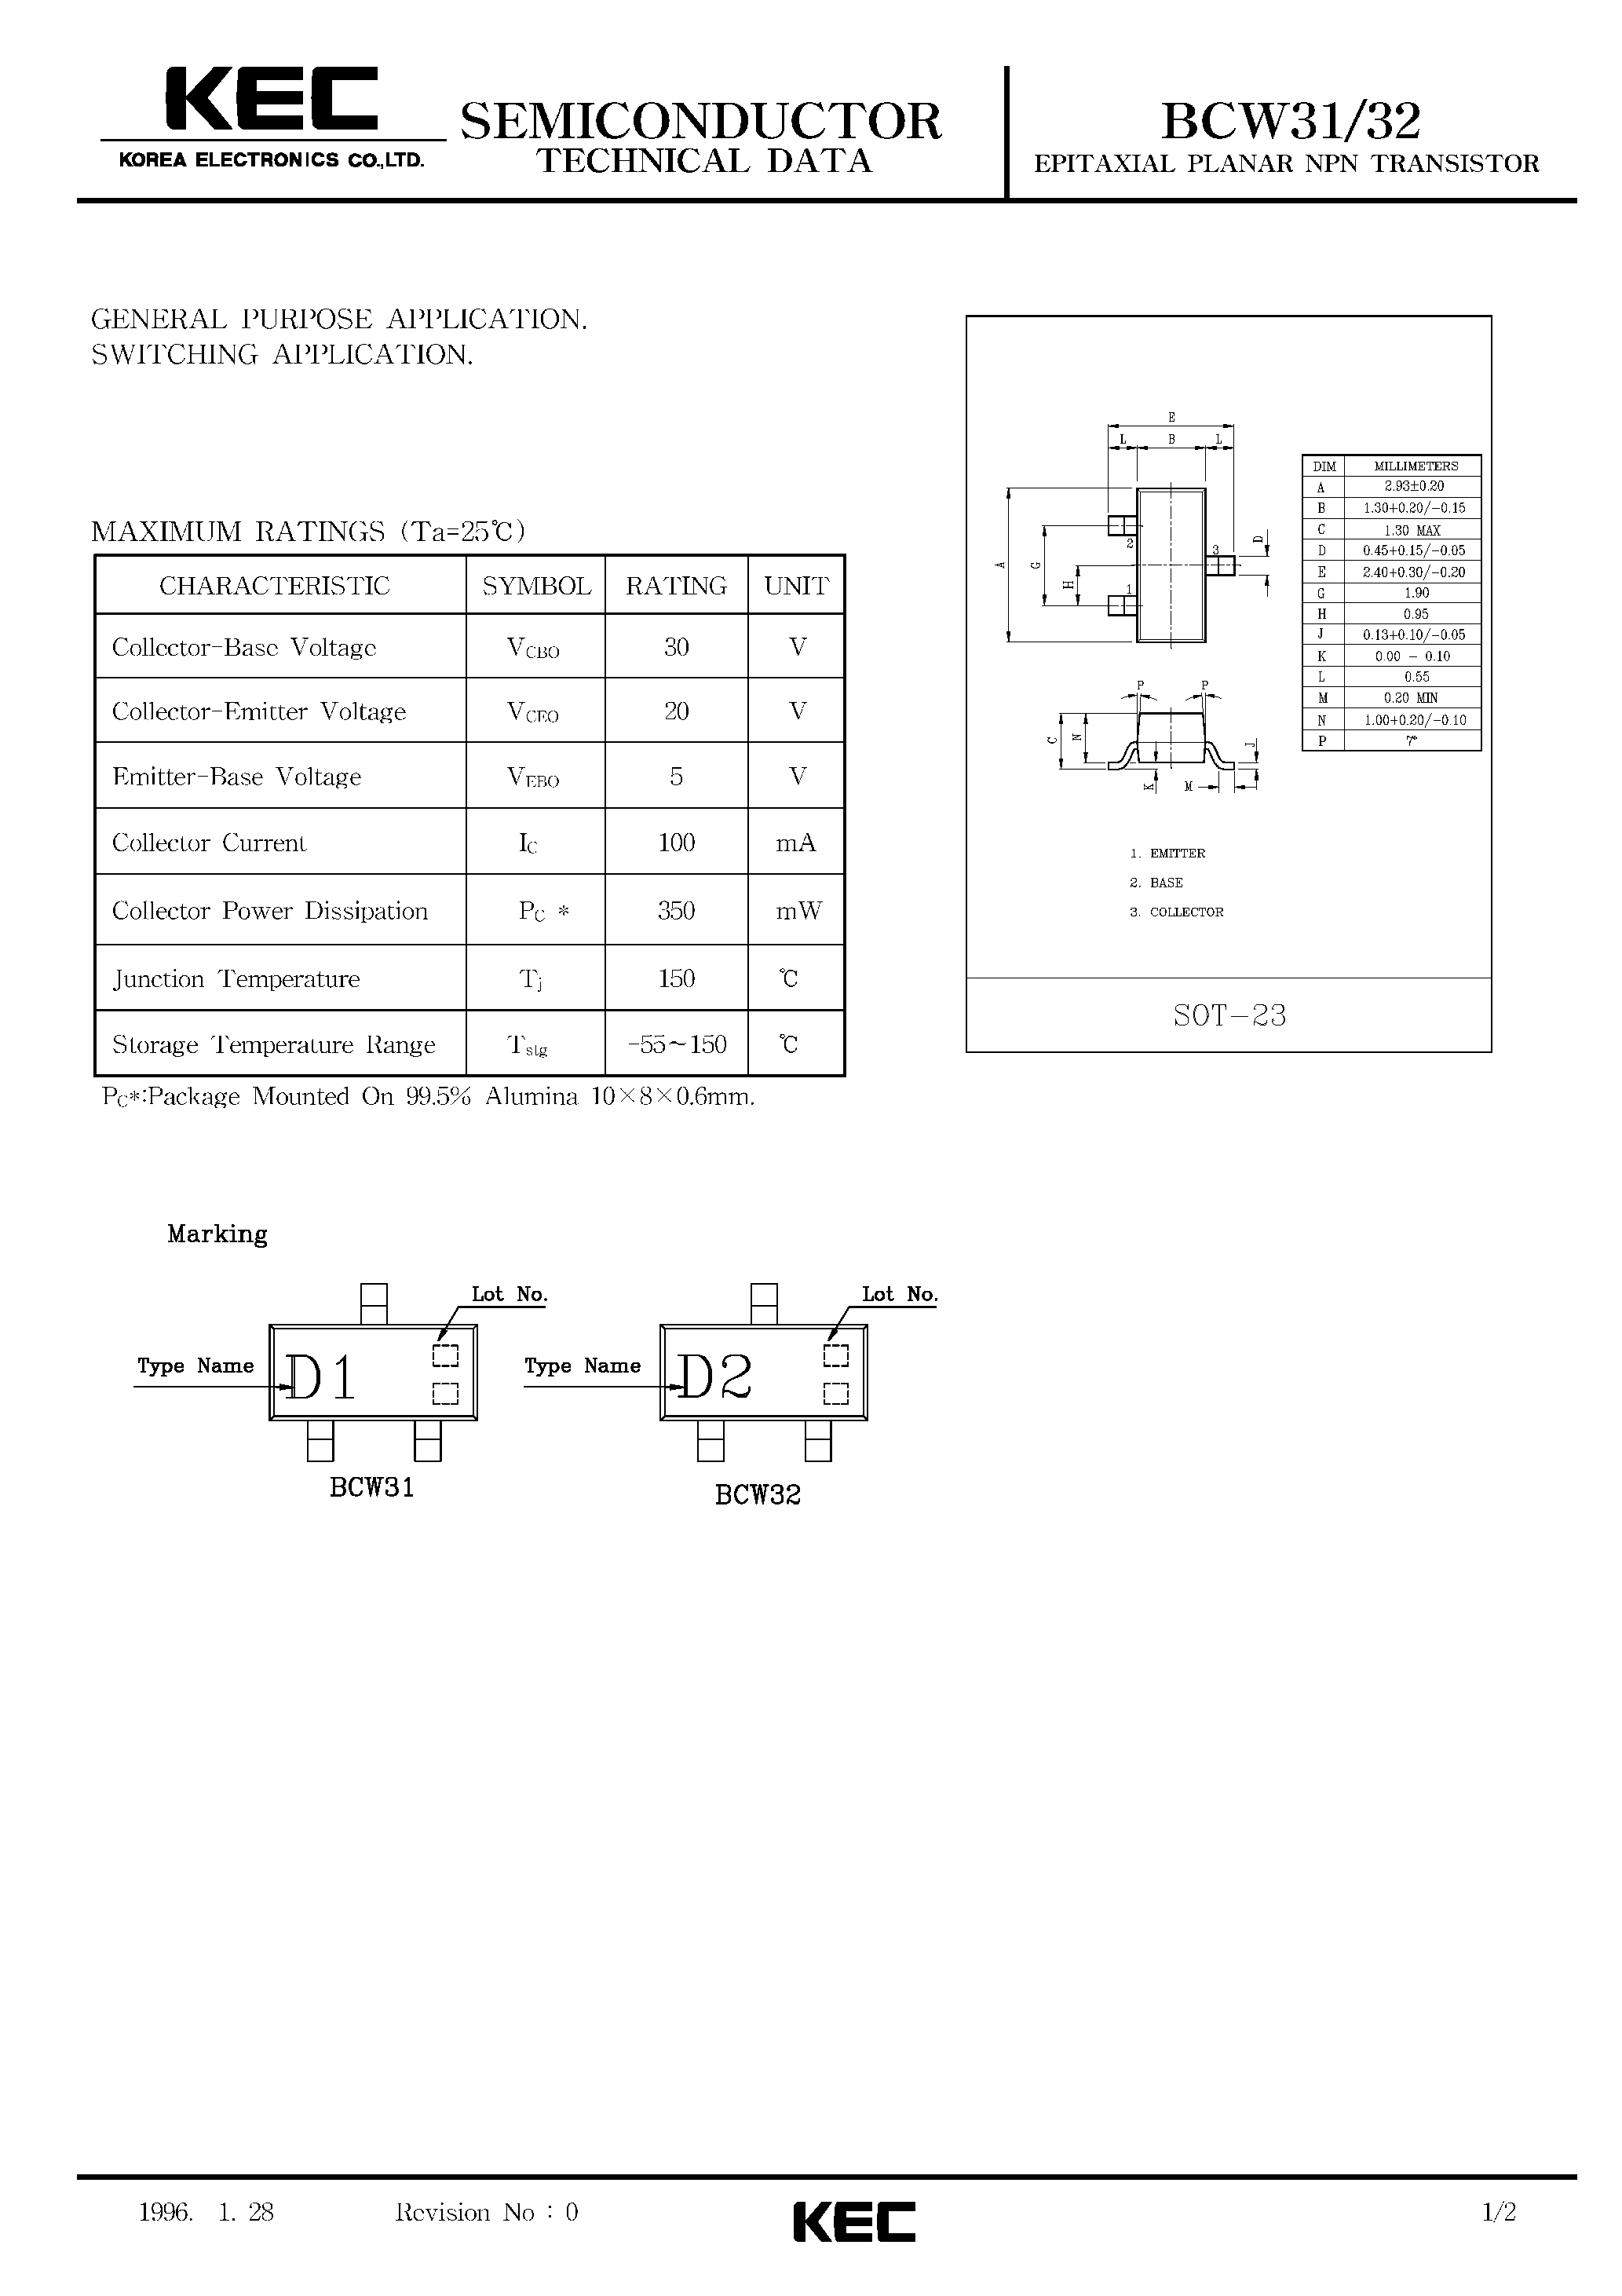 Datasheet BCW31 - EPITAXIAL PLANAR NPN TRANSISTOR (GENERAL PURPOSE/ SWITCHING) page 1